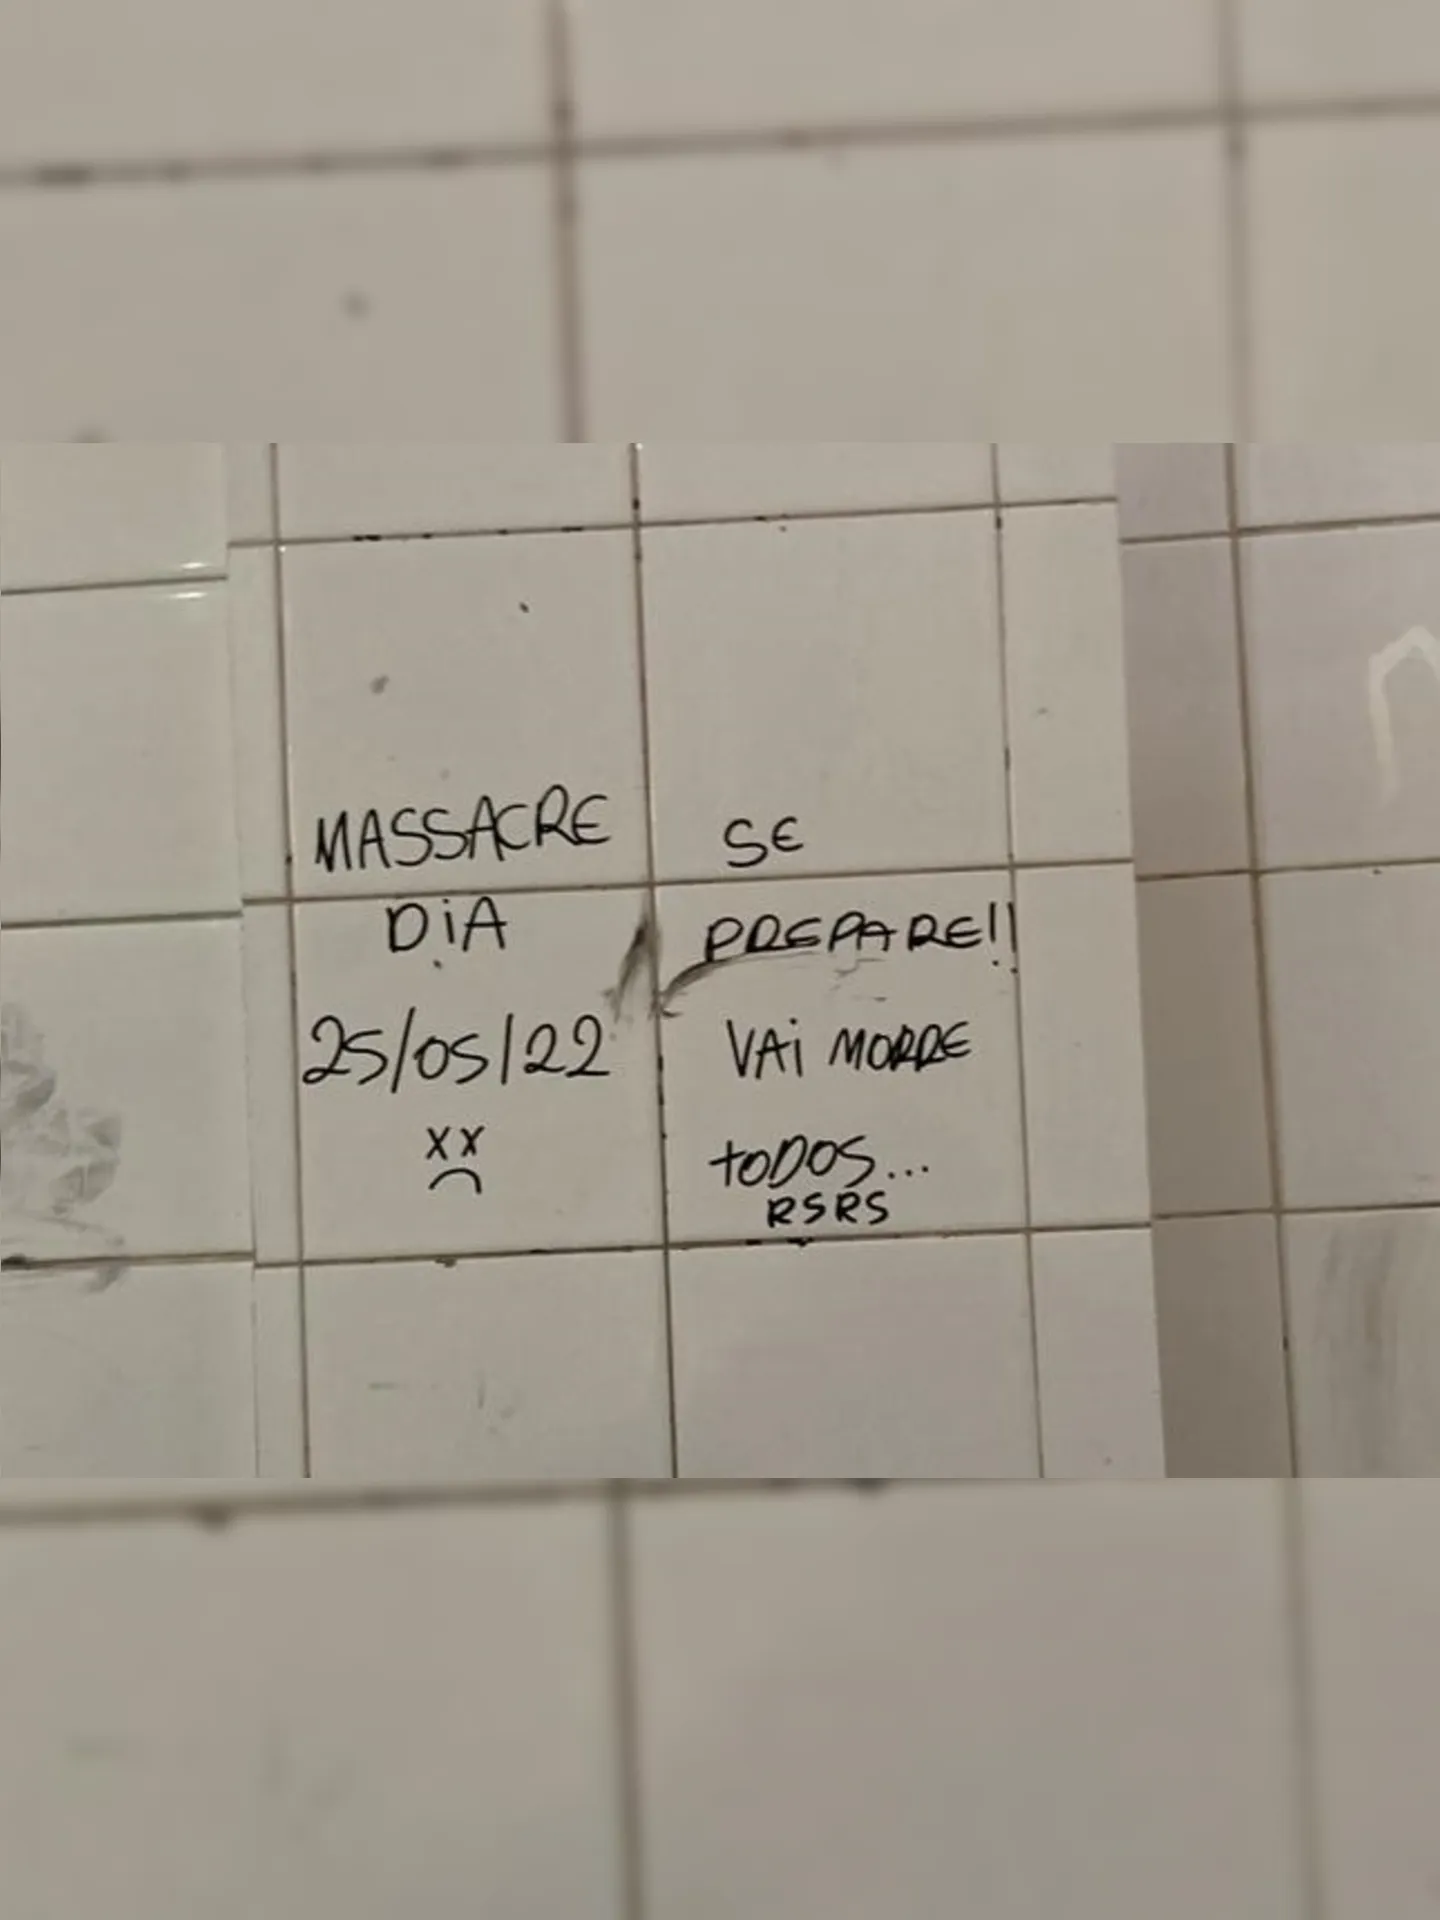 Recado foi escrito no banheiro da unidade